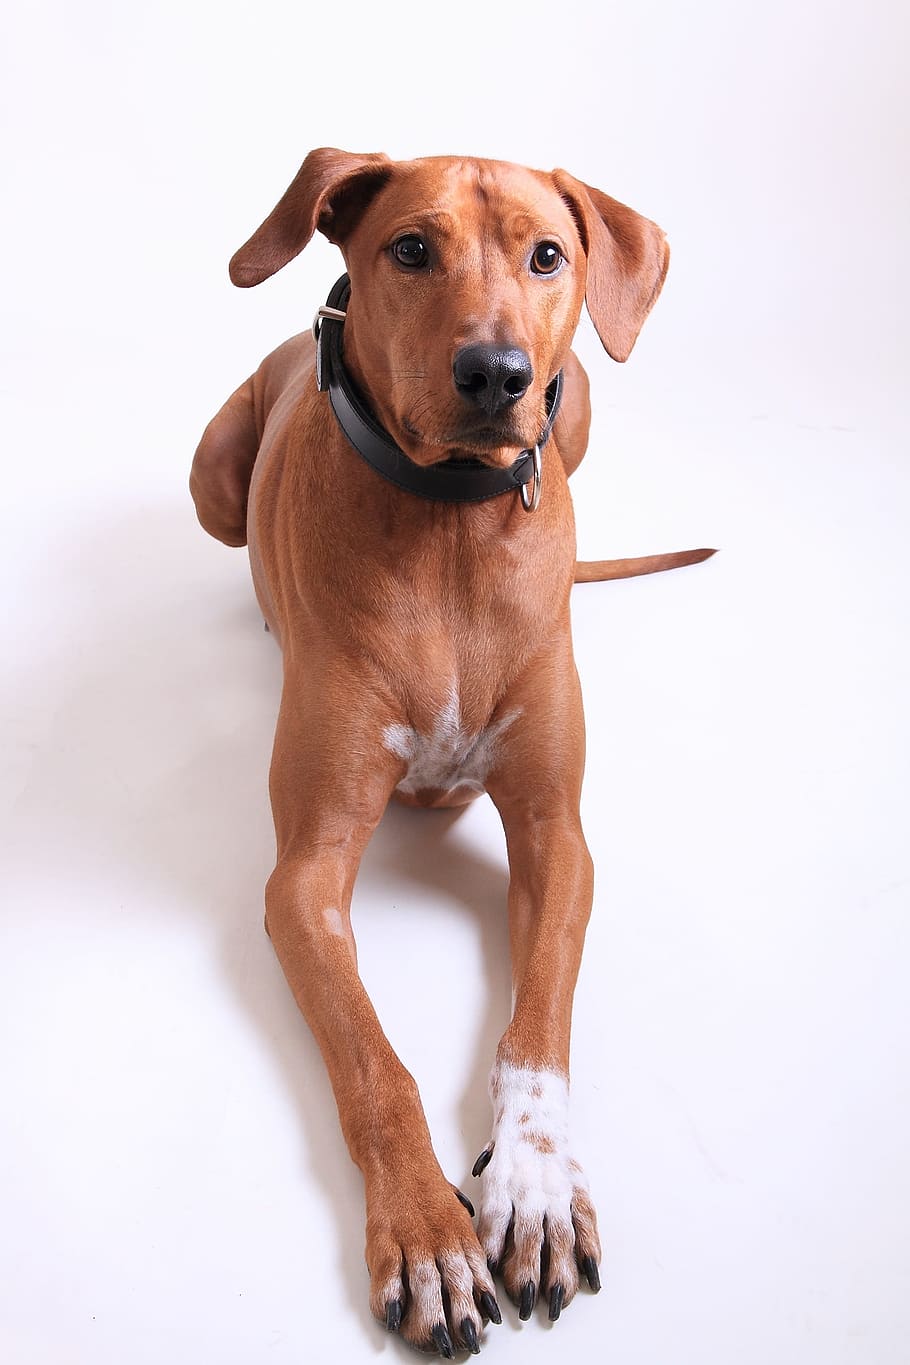 大人のredbone coonhound, 敷設, 白, 表面, ローデシアン・リッジバック, 犬の品種, ペット, 犬, 動物, カメラ目線